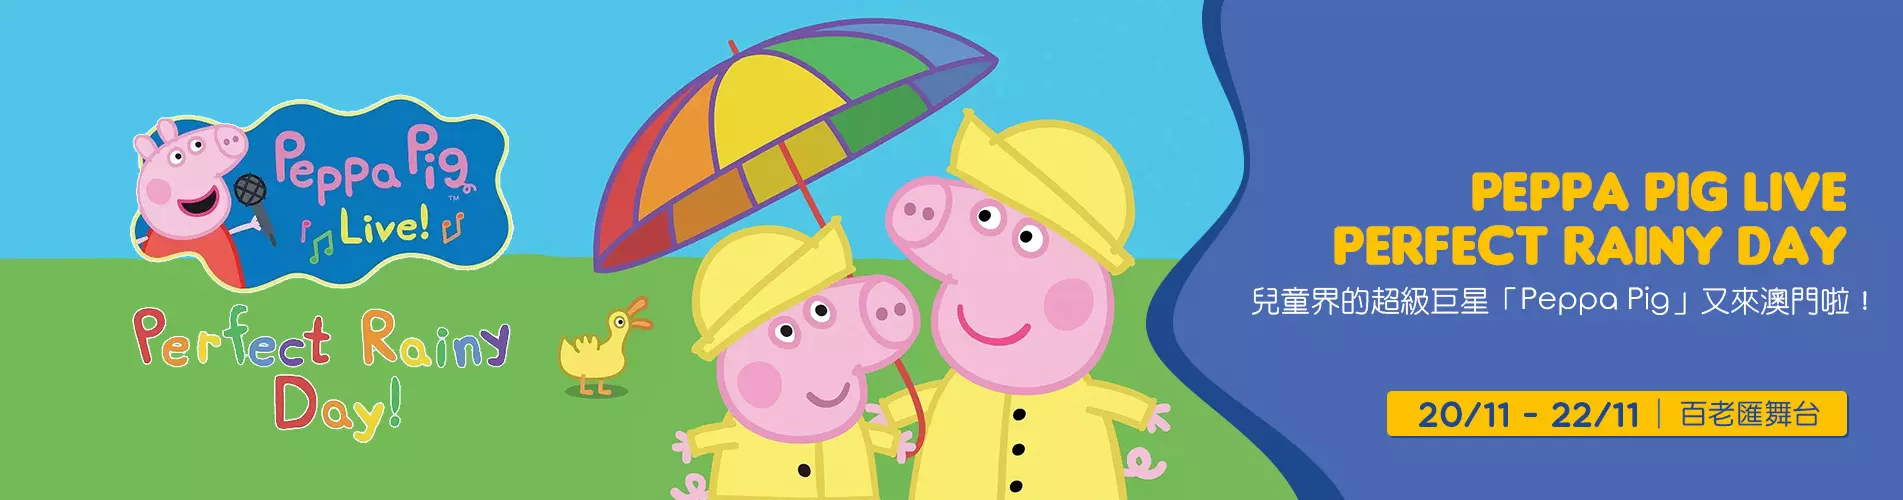 Peppa Pig Live - Perfect Rainy Day - 澳門站 (門票優惠低至85折)